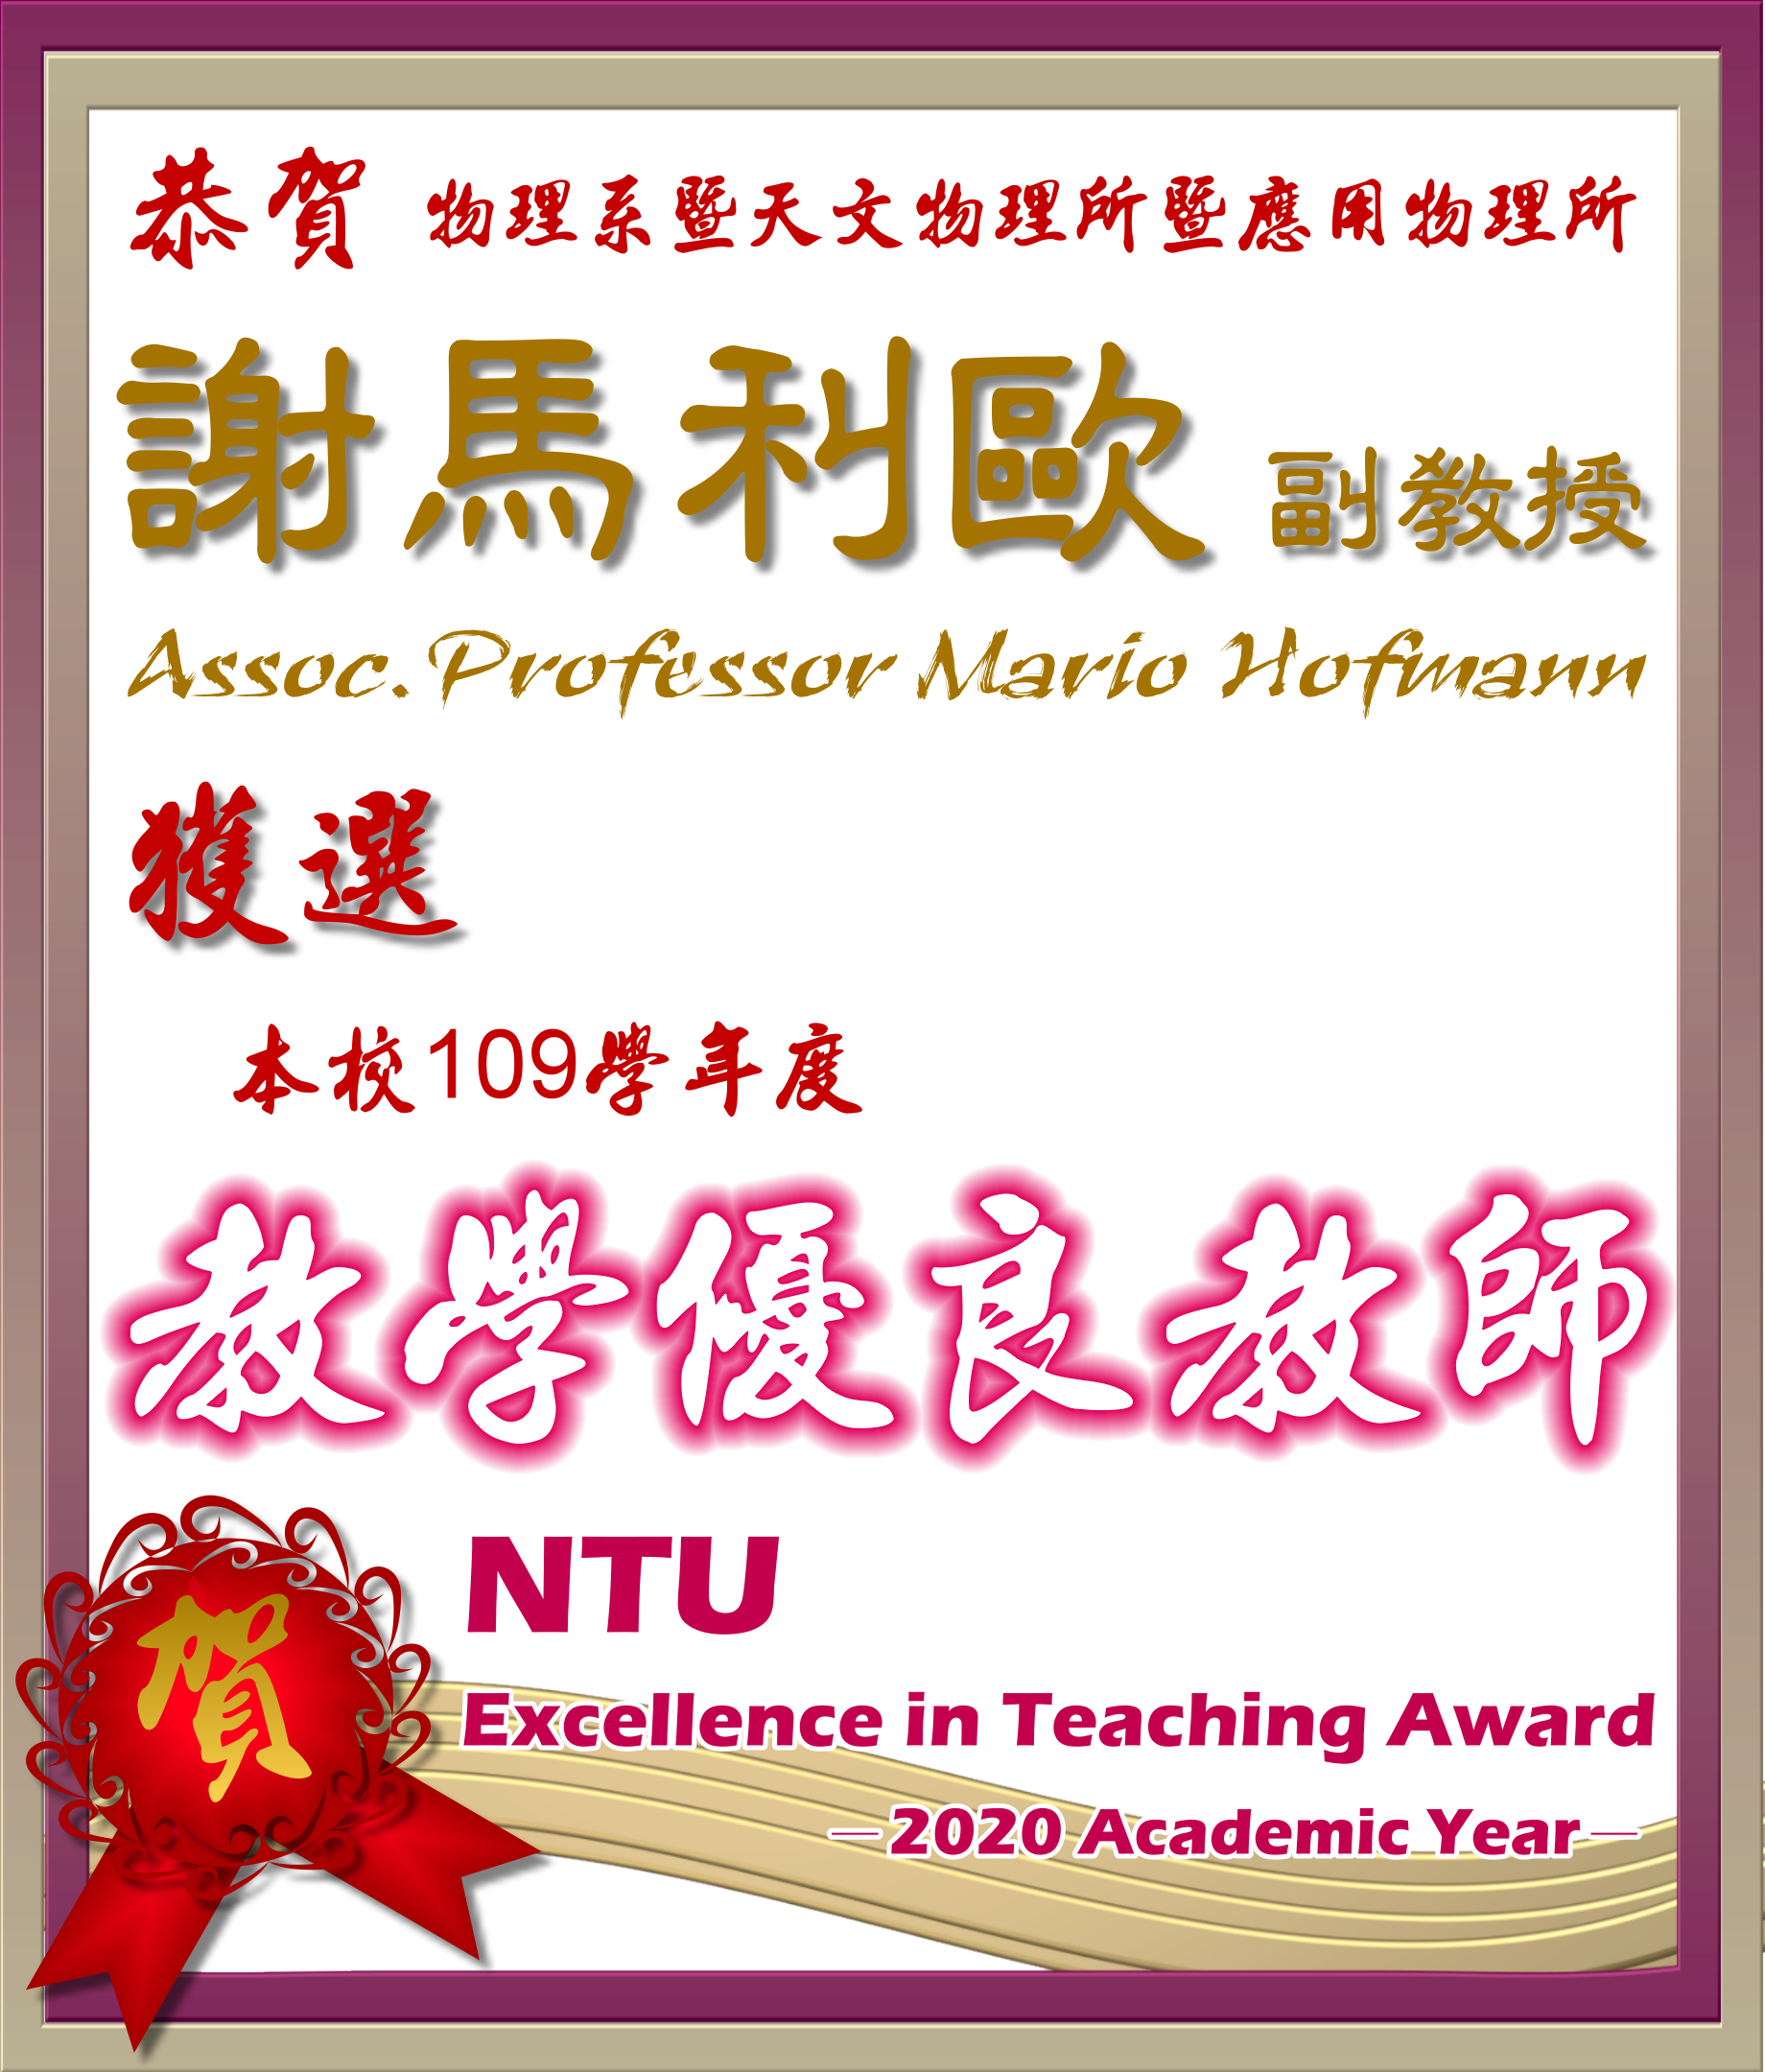 《賀》本系 謝馬利歐 副教授 Prof. Mario Hofmann 獲選 109學年度《教學優良教師》(NTU Excellence in Teaching Award)